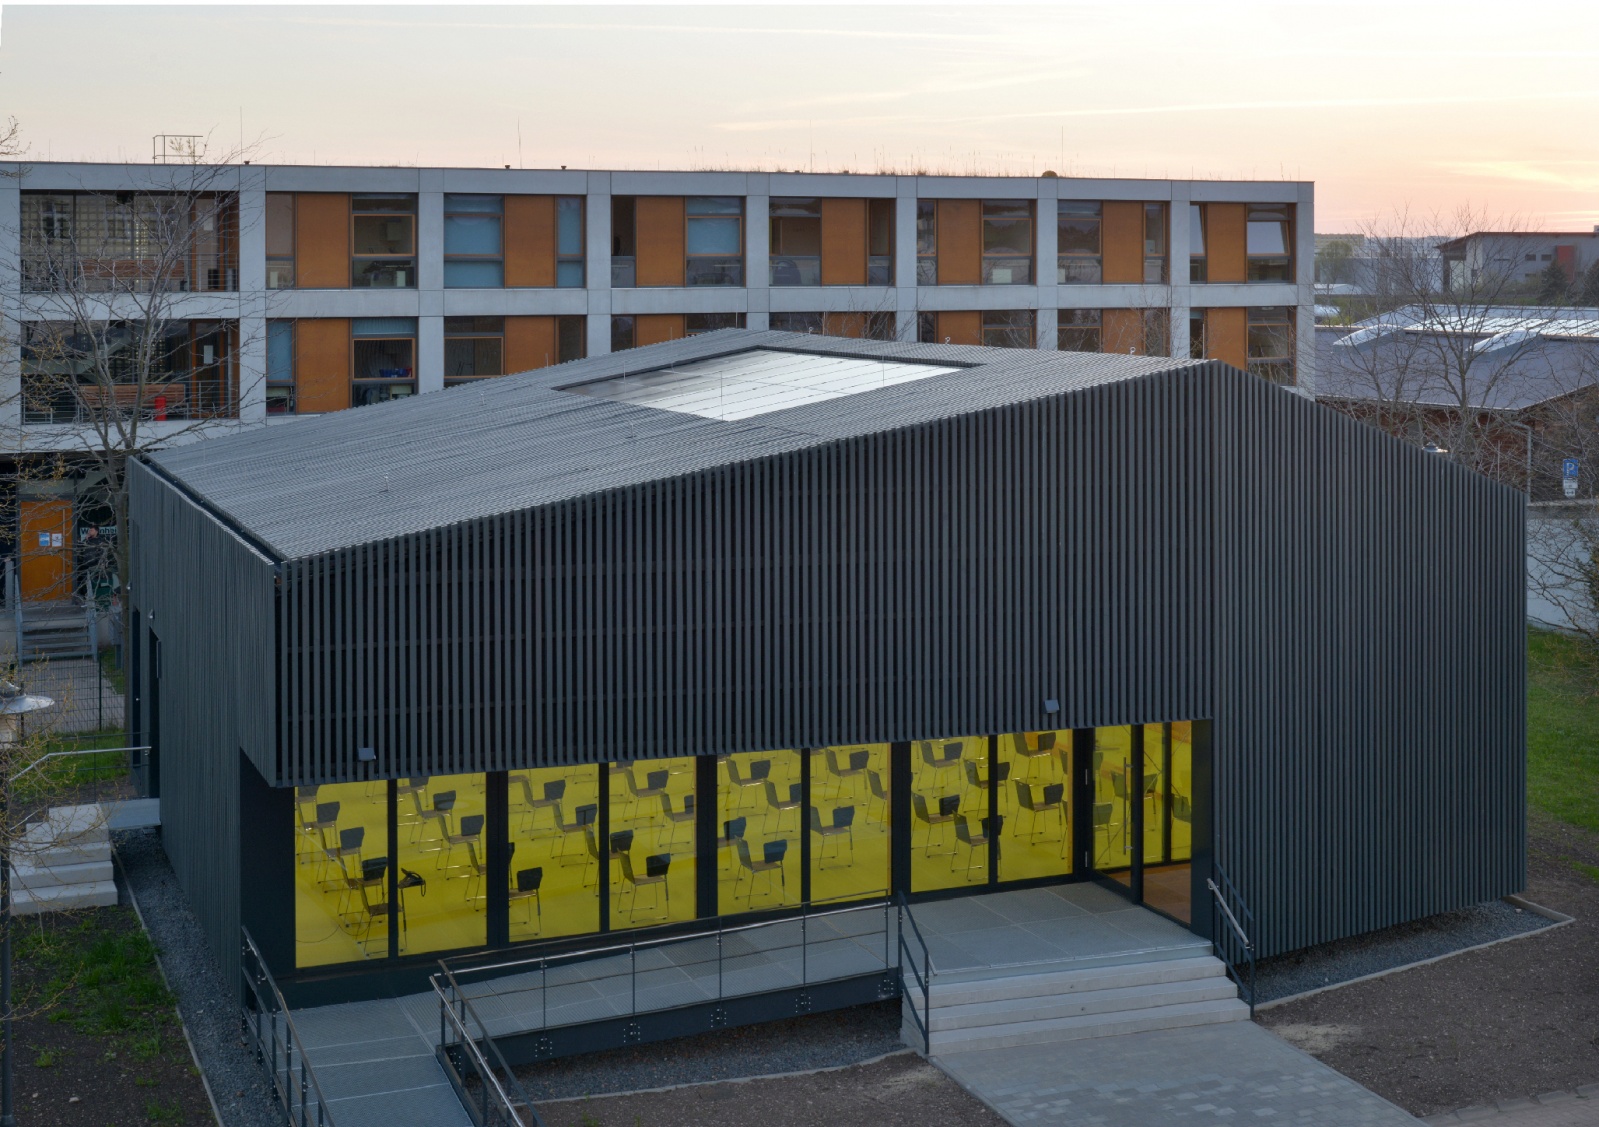 Green Campus. Ausgezeichnet mit dem Thüringer Staatspreis für Baukultur 2020/2021, Figure: Jörg Behrens